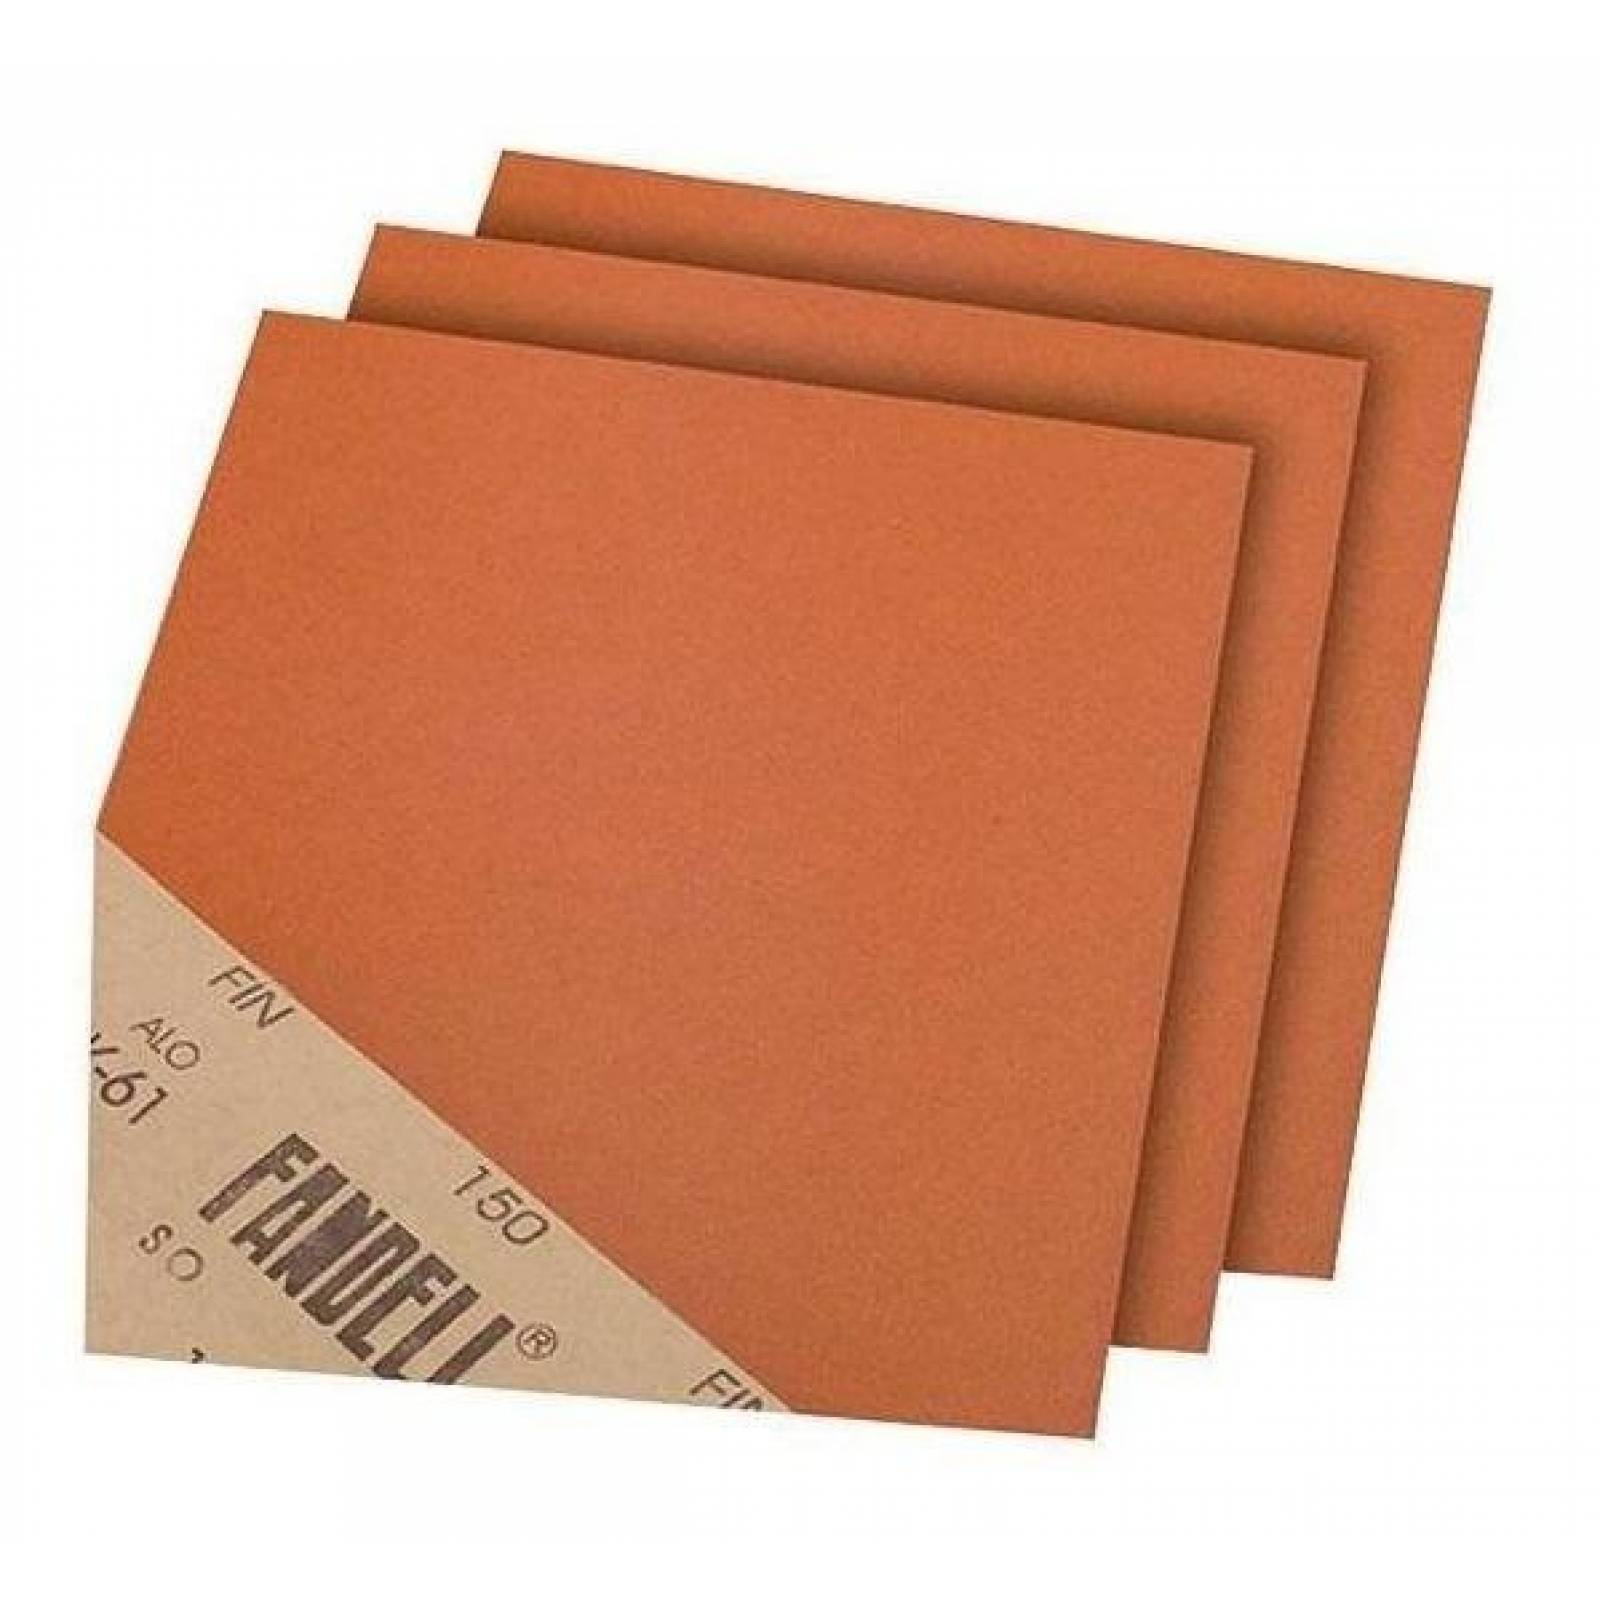 Lija para madera grano 150, hoja de papel Fandeli – Casco de Oro